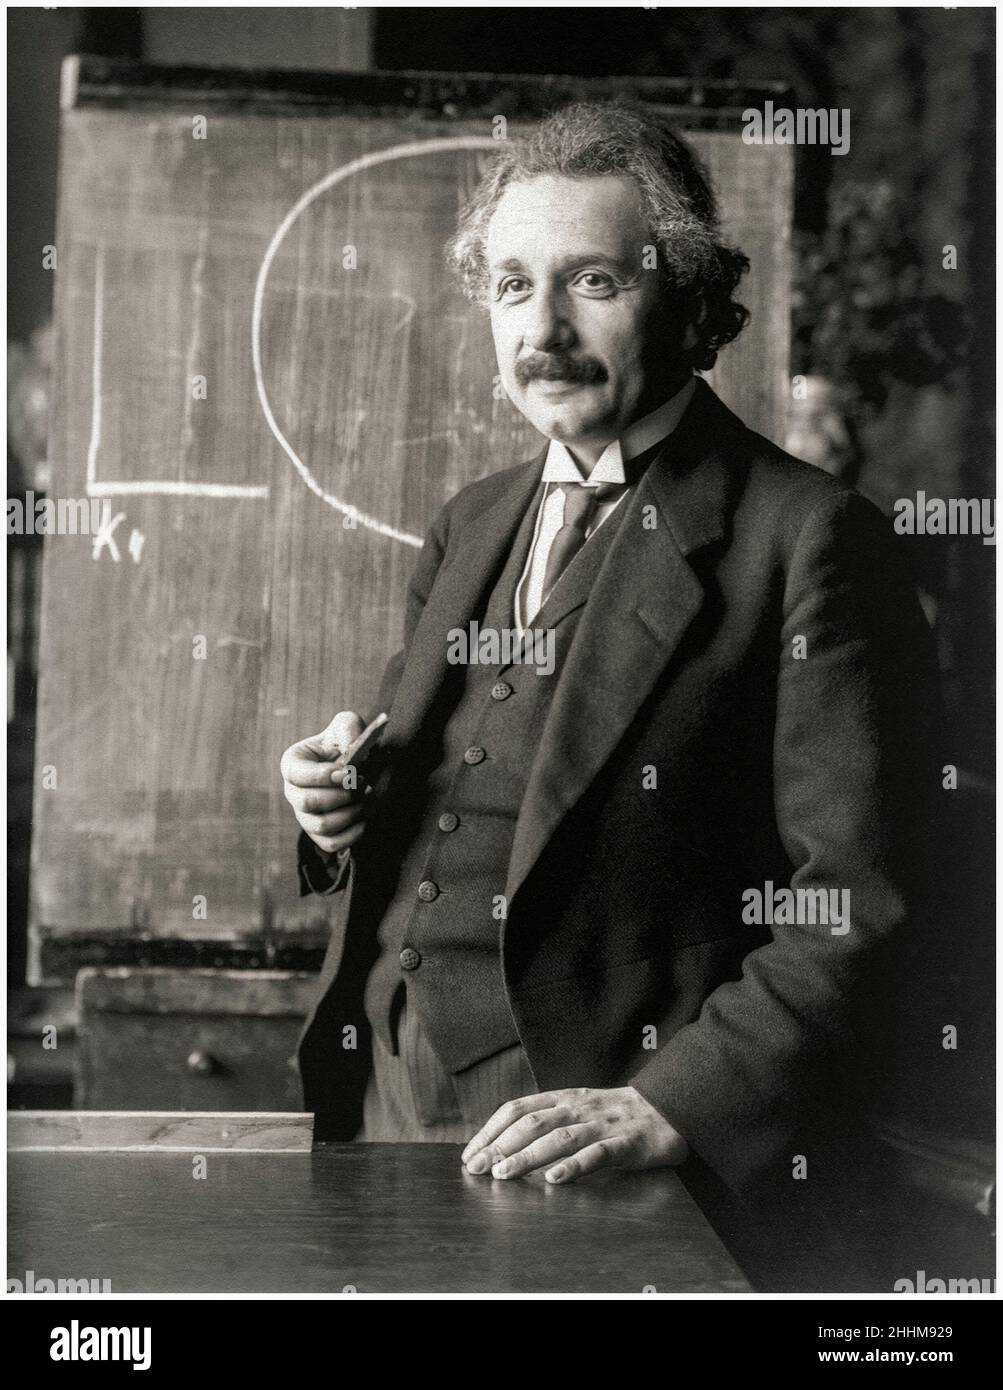 Albert Einstein (1879-1955), German born theoretical physicist during a lecture, portrait photograph by Ferdinand Schmutzer, 1921 Stock Photo